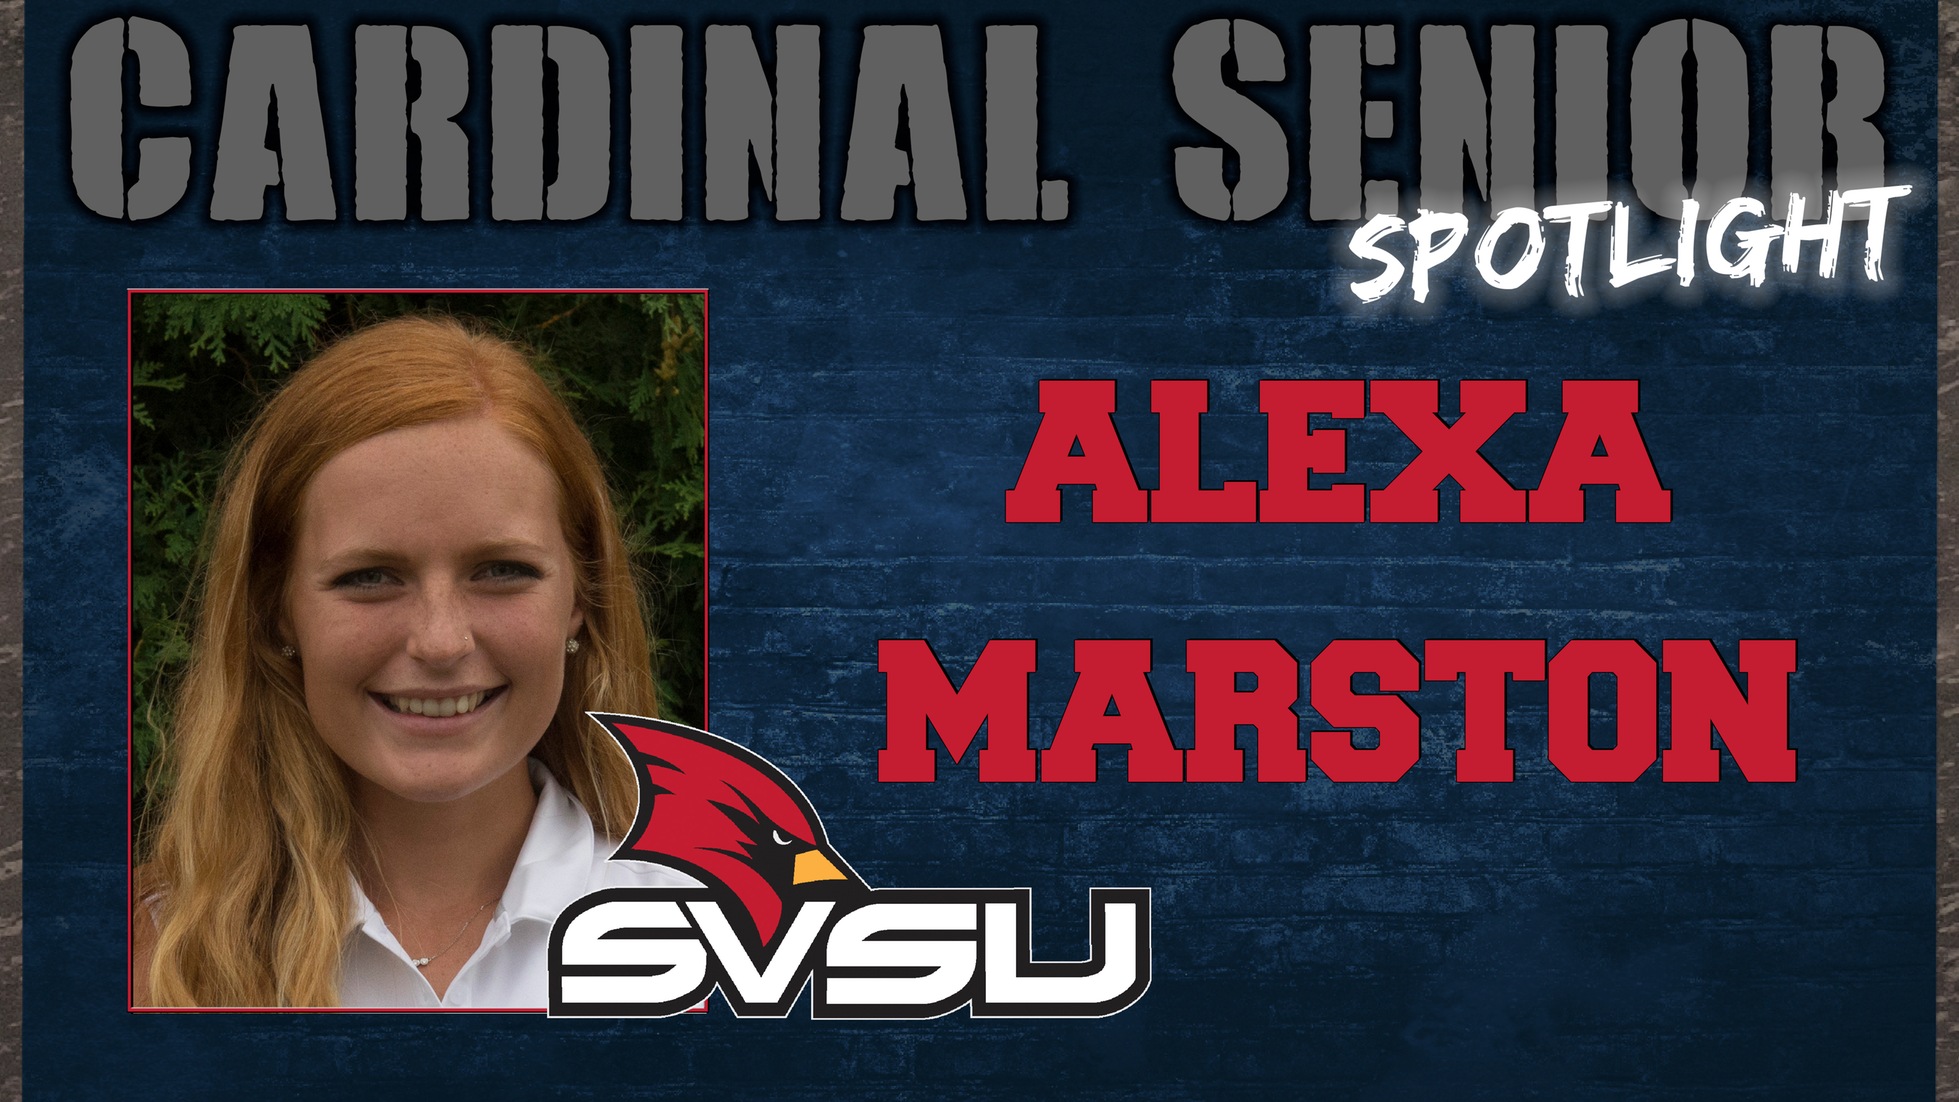 SVSU Cardinal Senior Spotlight - Alexa Marston